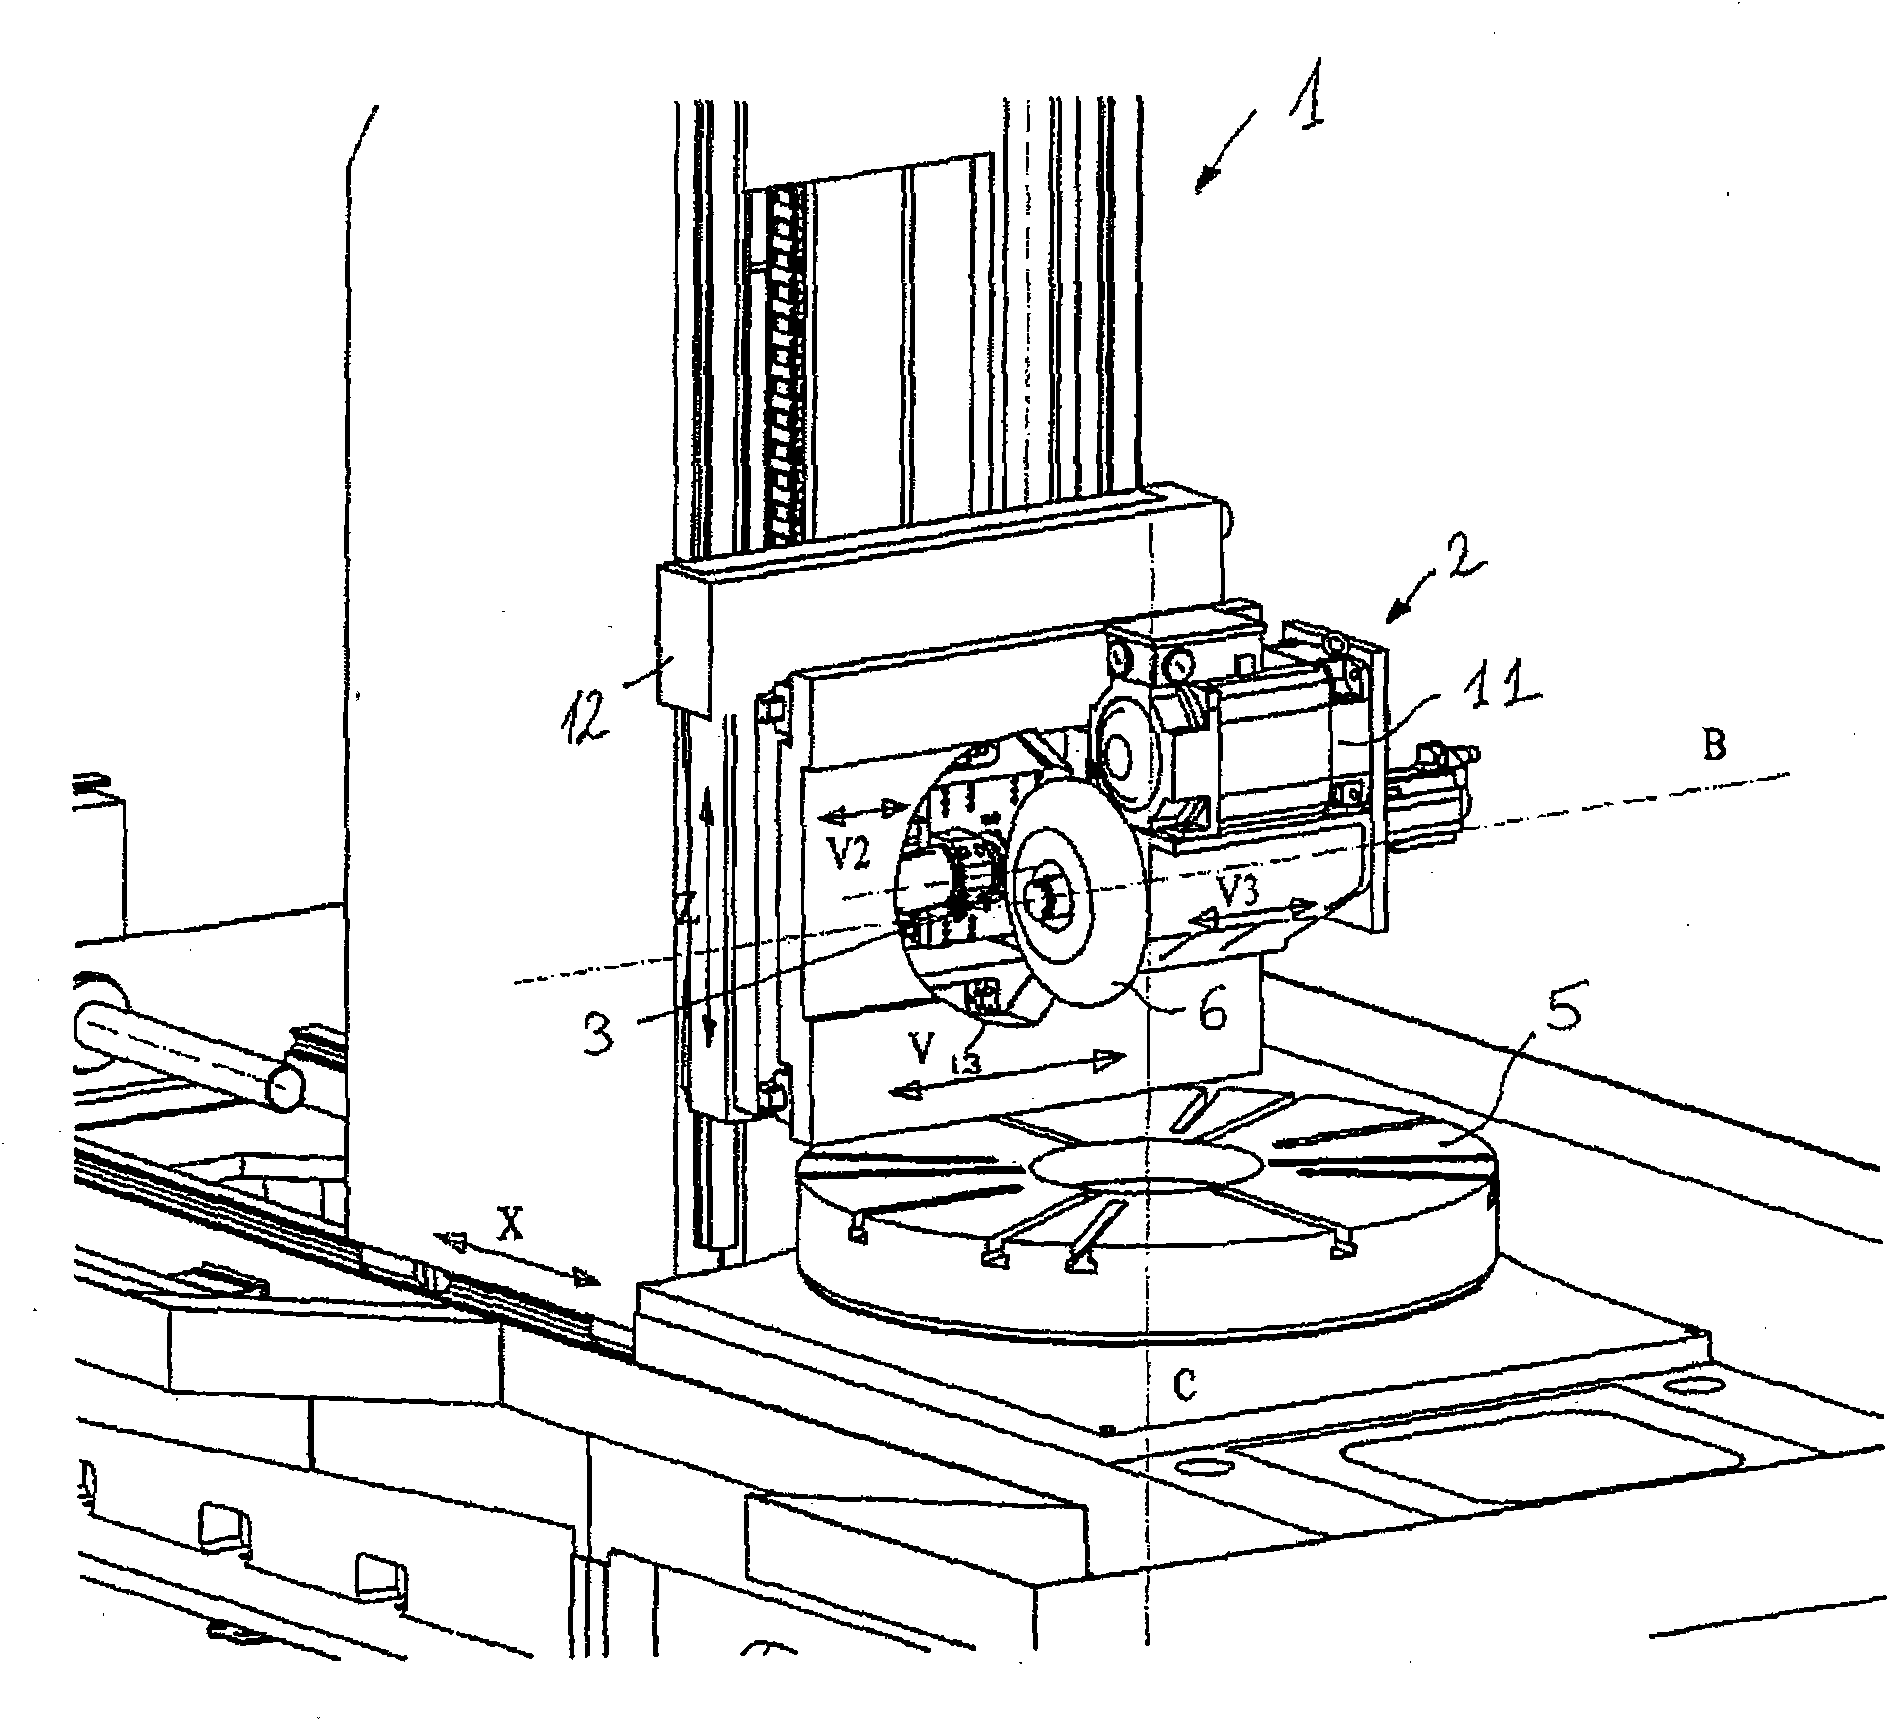 Gear cutting machine